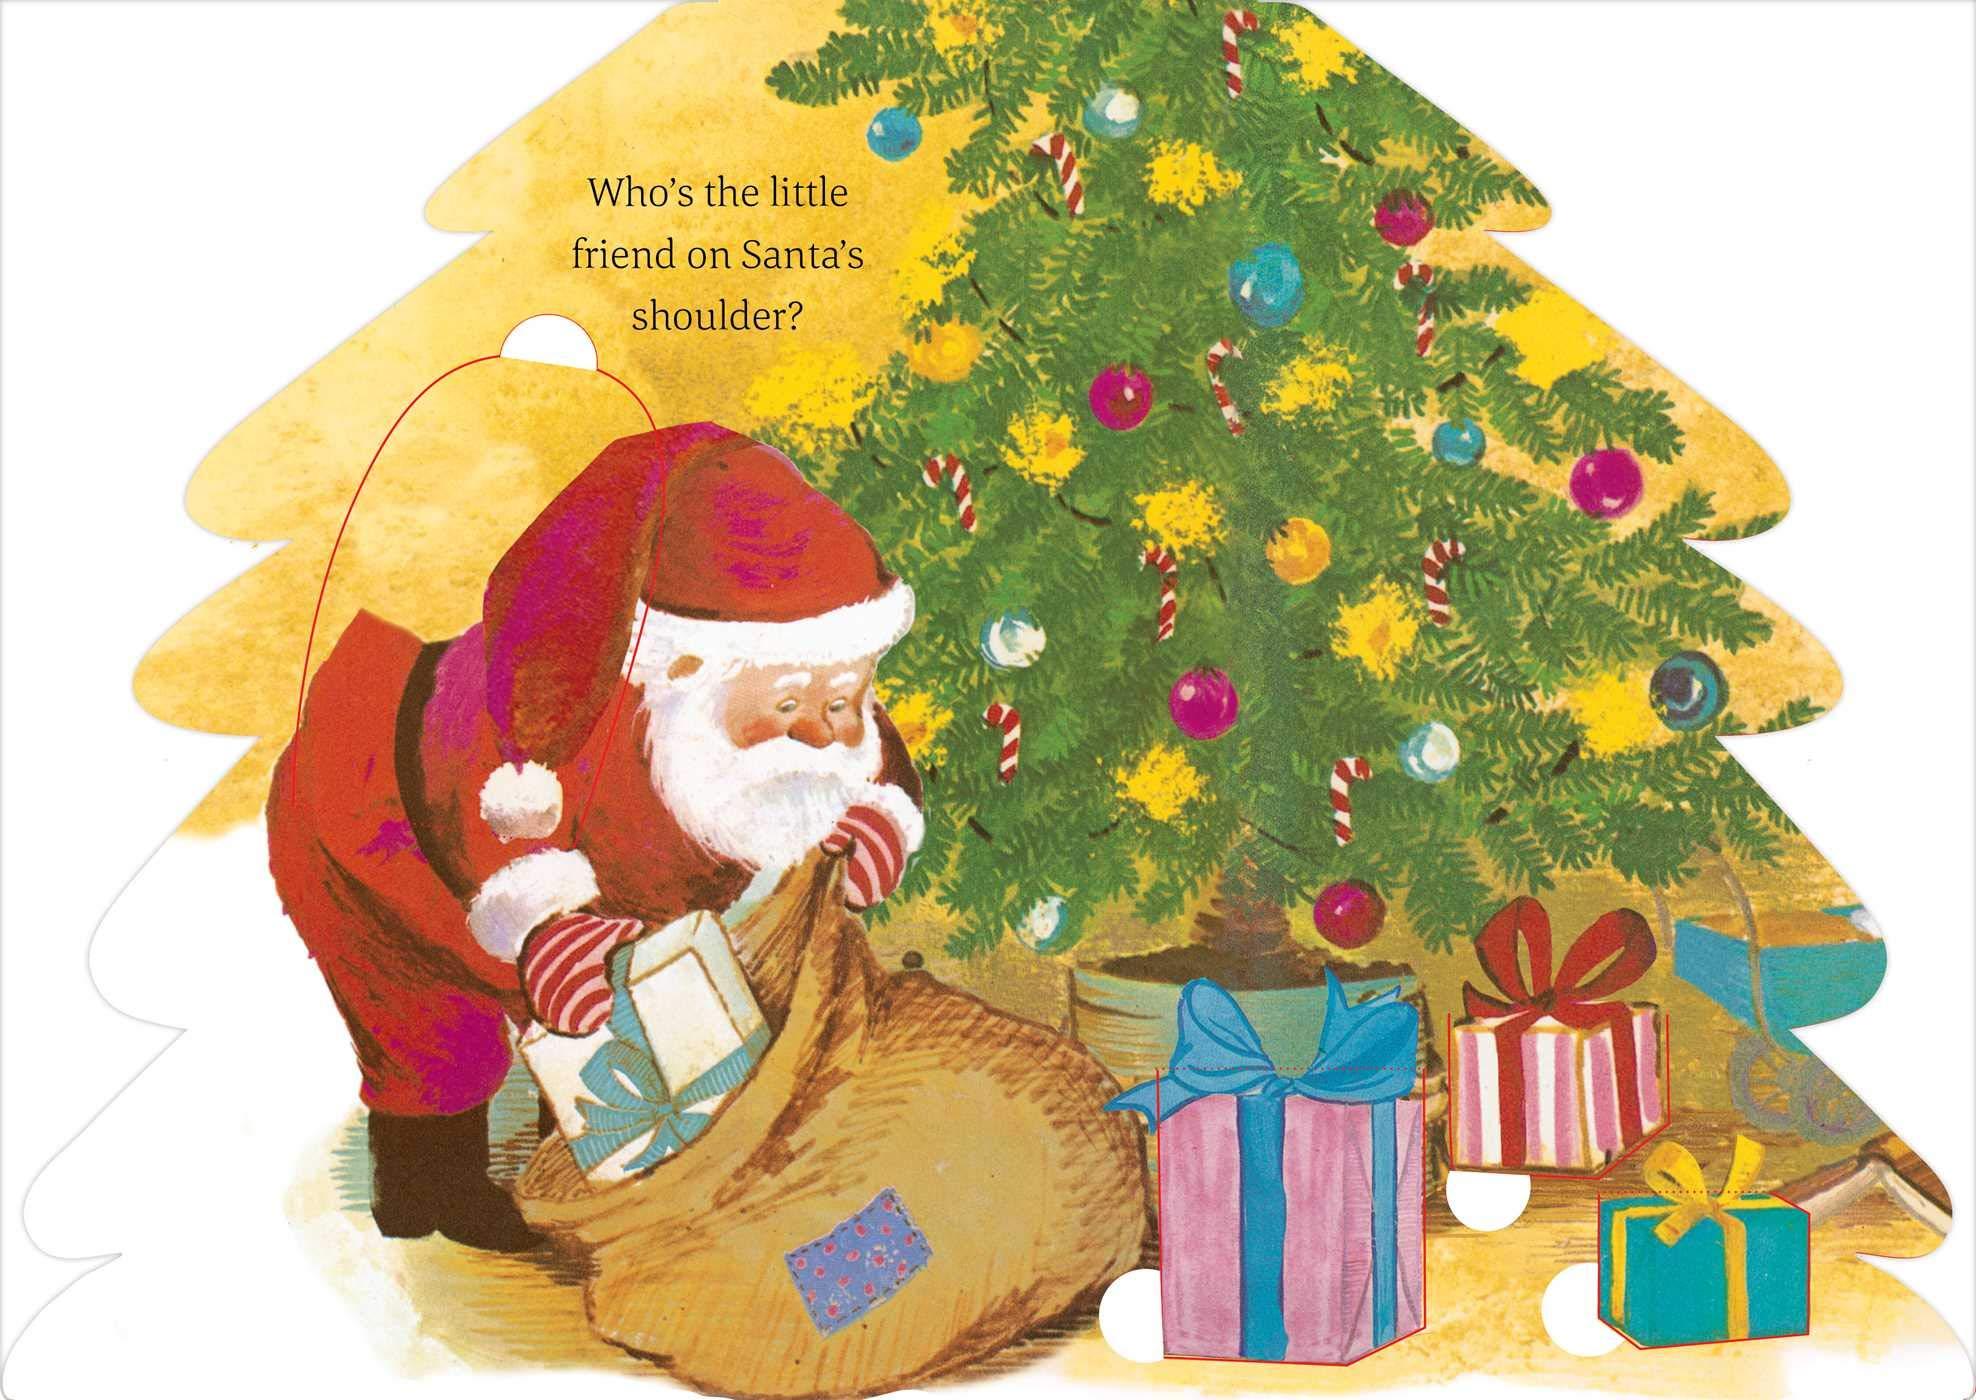 Santa Mouse Christmas Surprise: A Lift-the-Flap Book